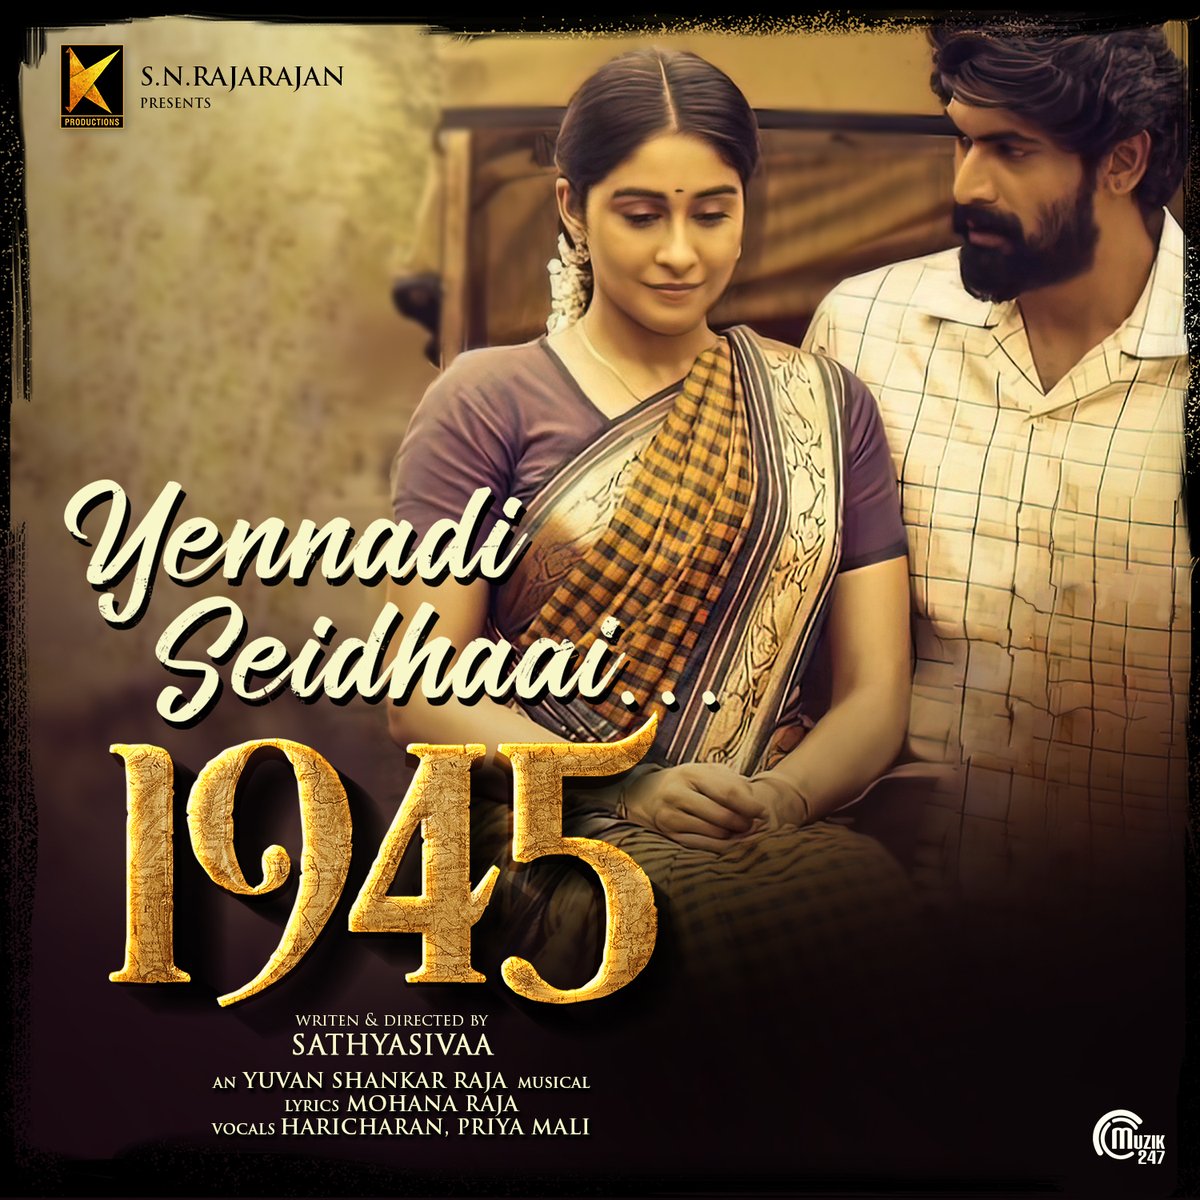 கரைகிறேன் கலைகிறேன் எதுவும் நீதானே!❤️🎶

The mesmerizing #YennadiSeidhaai from #1945Movie is OUT NOW▶️youtu.be/ZfBrZFuJ4tg

🎶 @thisisysr 
🎤 @HaricharanMusic & @thisispriyamali 
✒️ #MohanaRaja